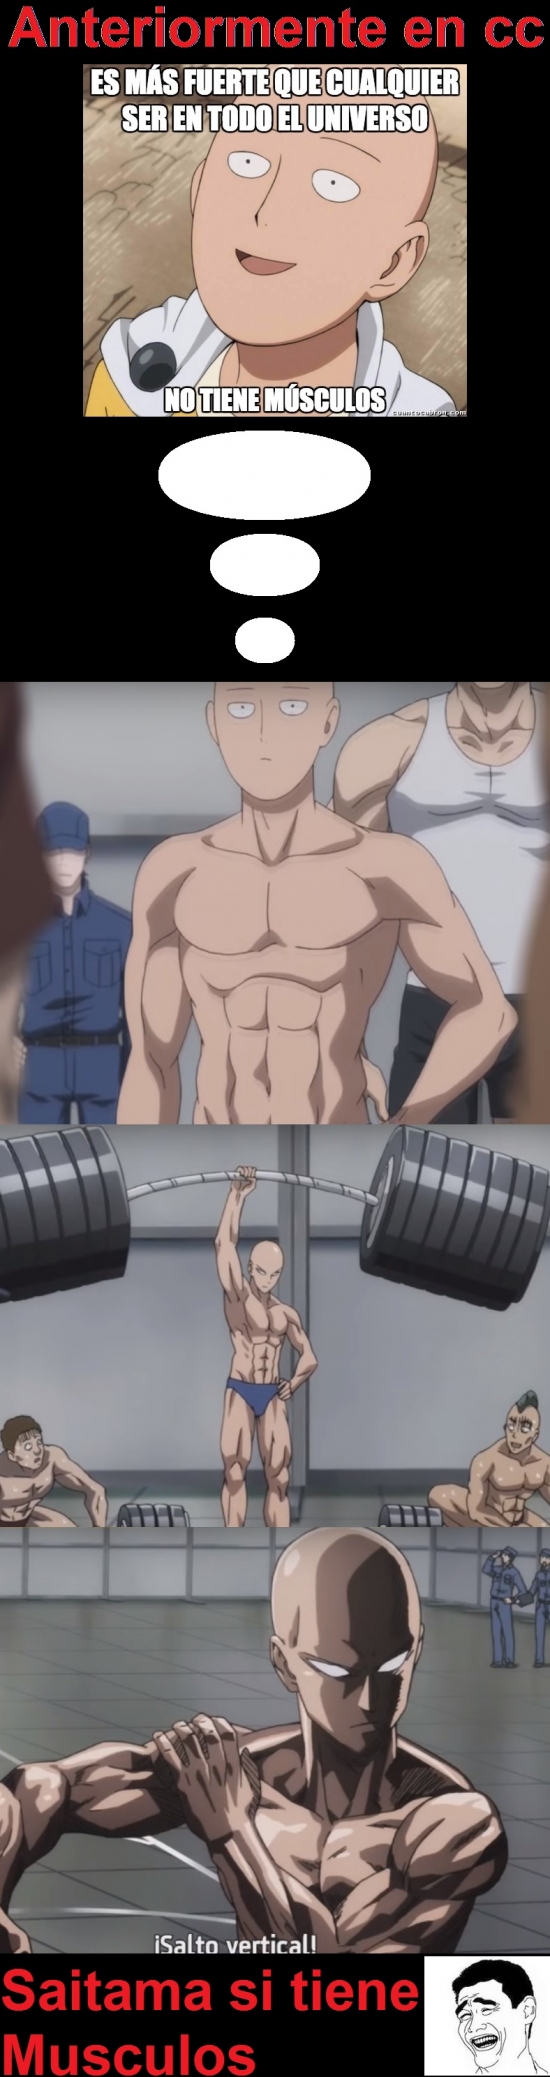 Meme_otros - ¡Saitama sí tiene músculos!